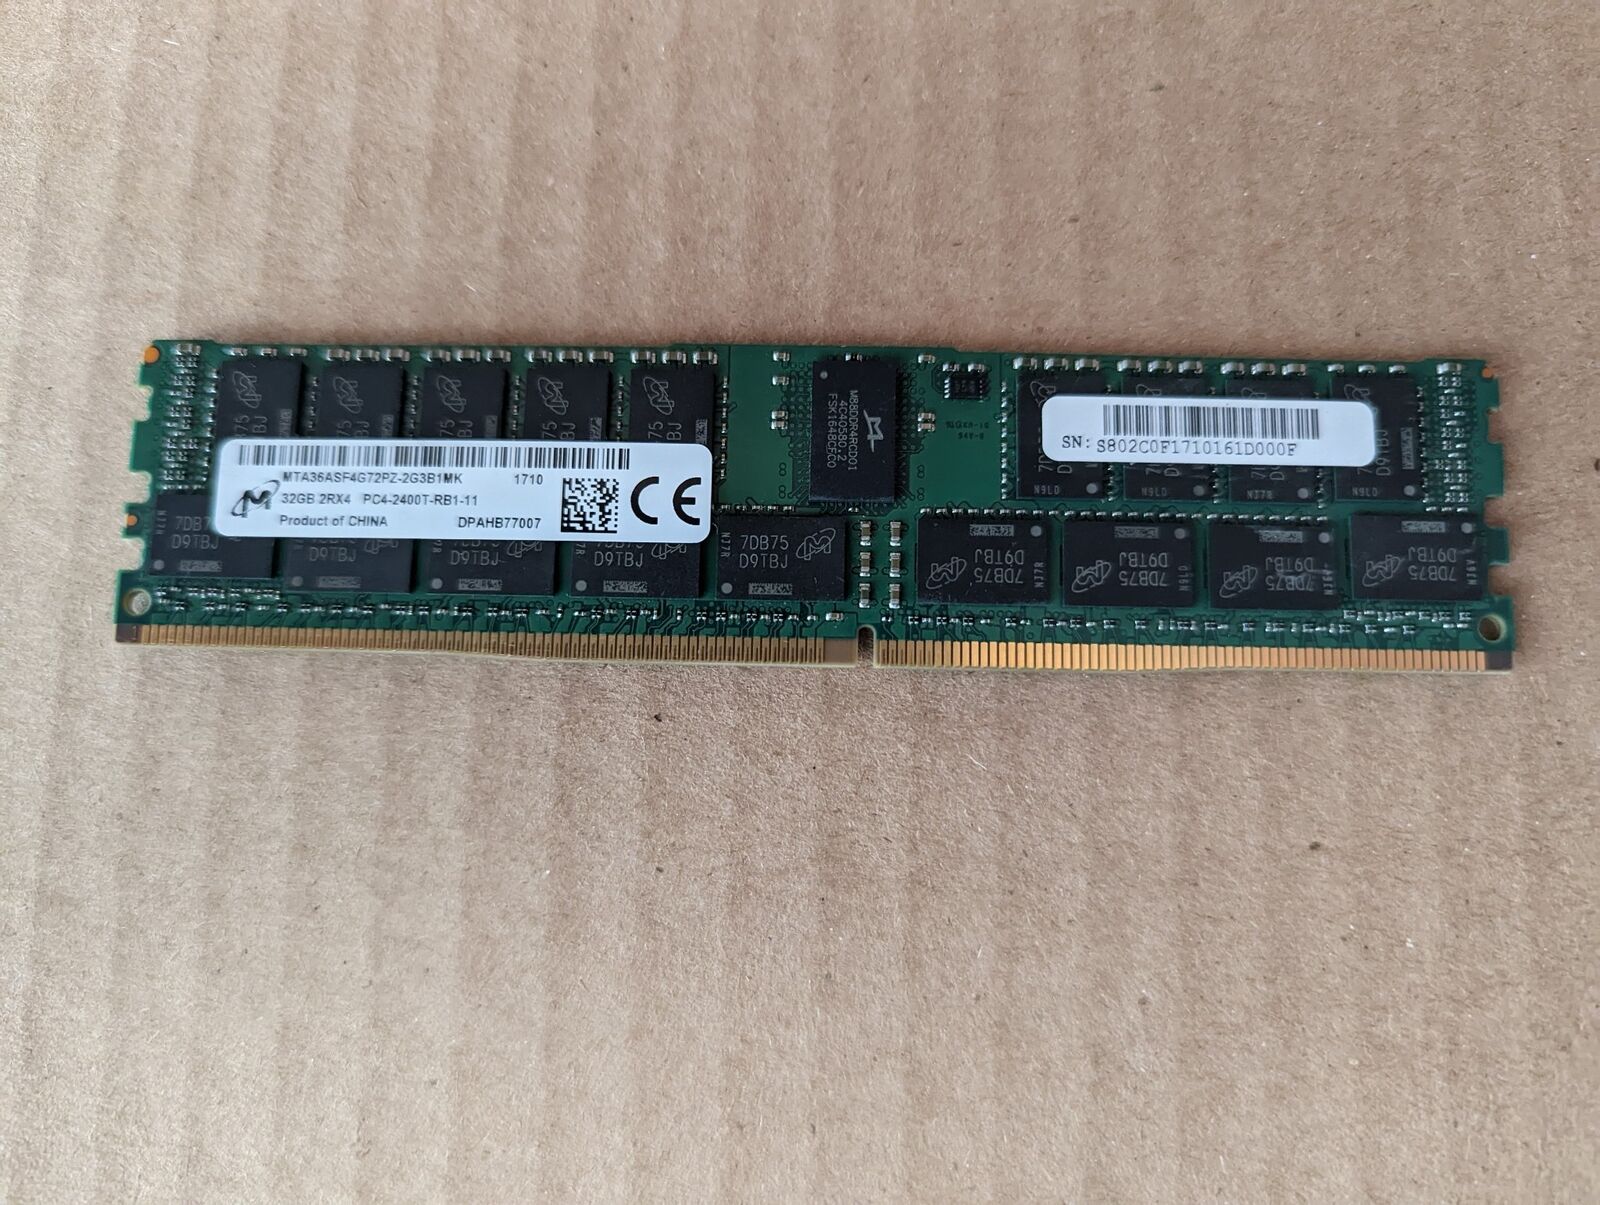 MICRON 32GB  MTA36ASF4G72PZ-2G3B1MK PC4-19200 2400MHZ RDIMM SERVER RAM V1-4(9)